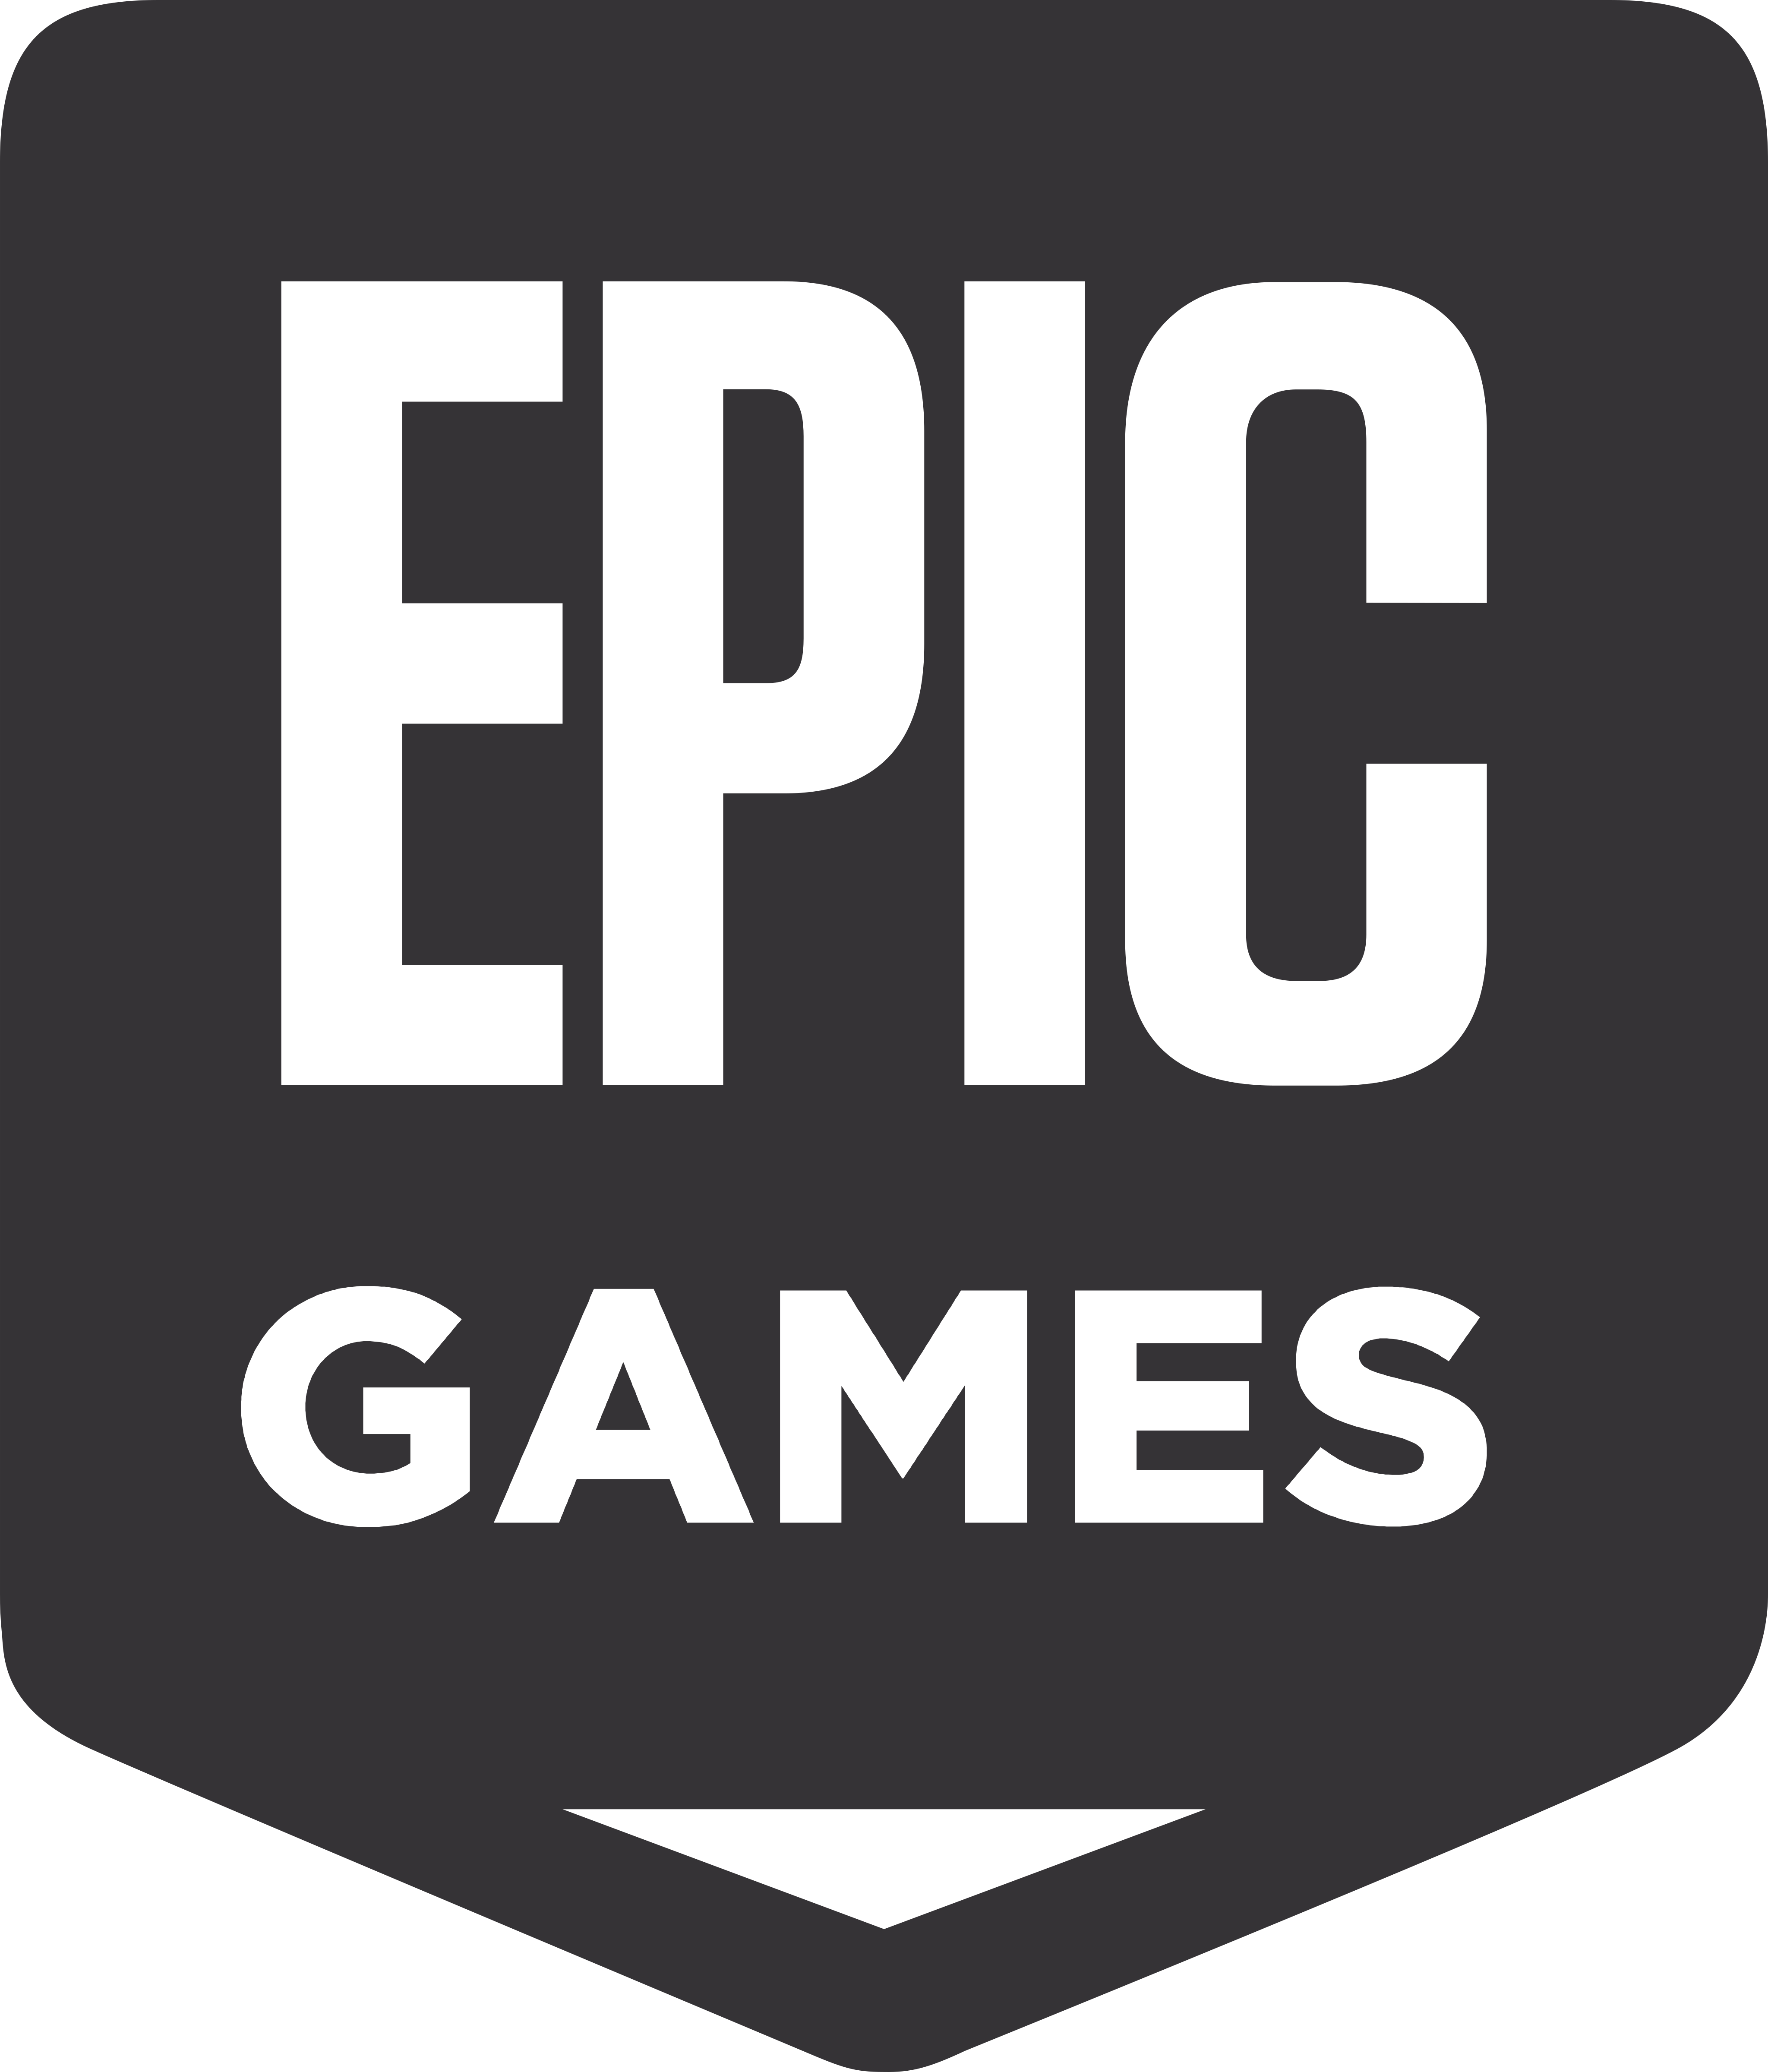 epic games logo 1 - Epic Games Logo